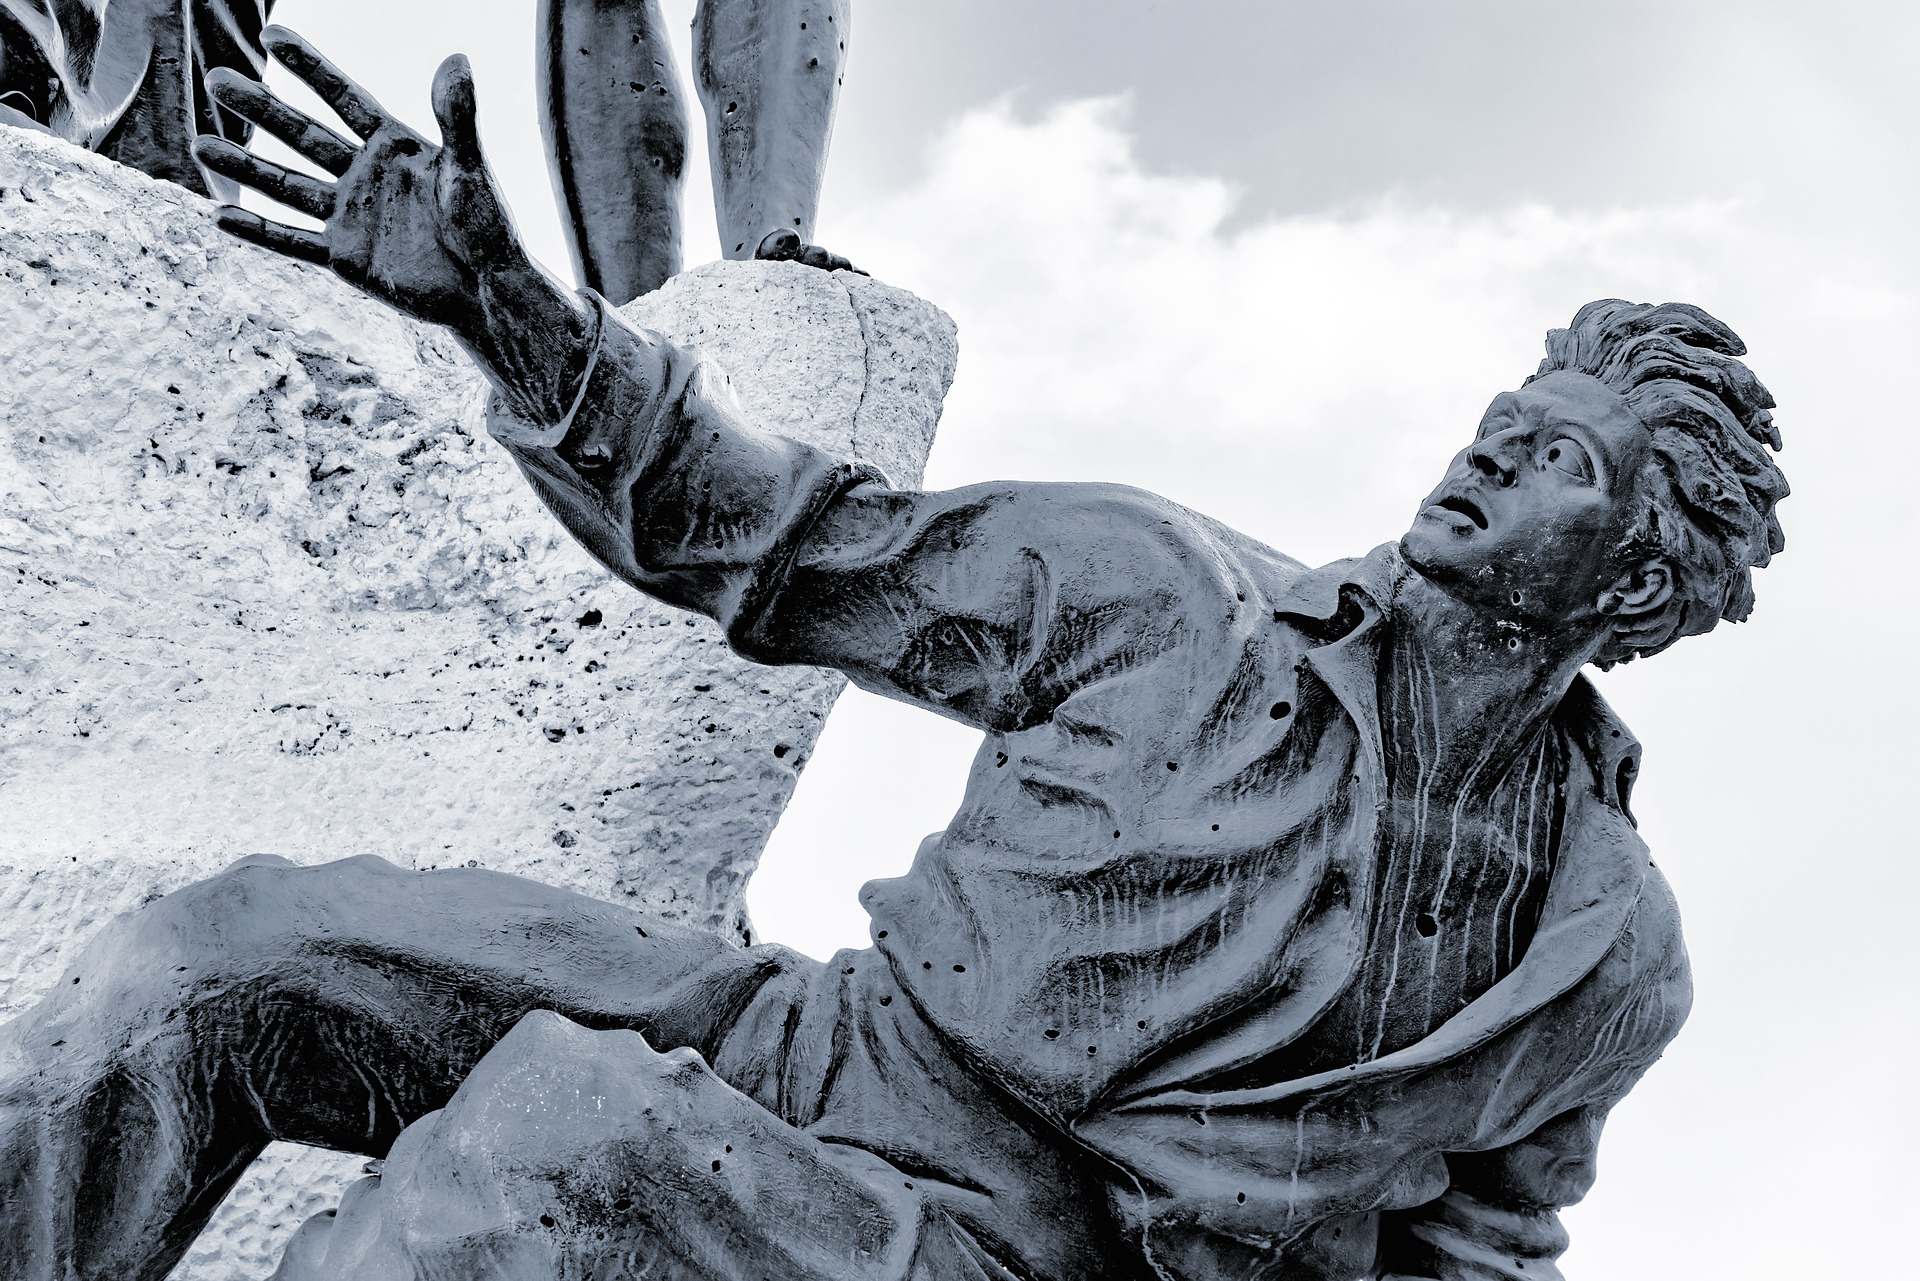 bronze statue of fallen man reaching for help